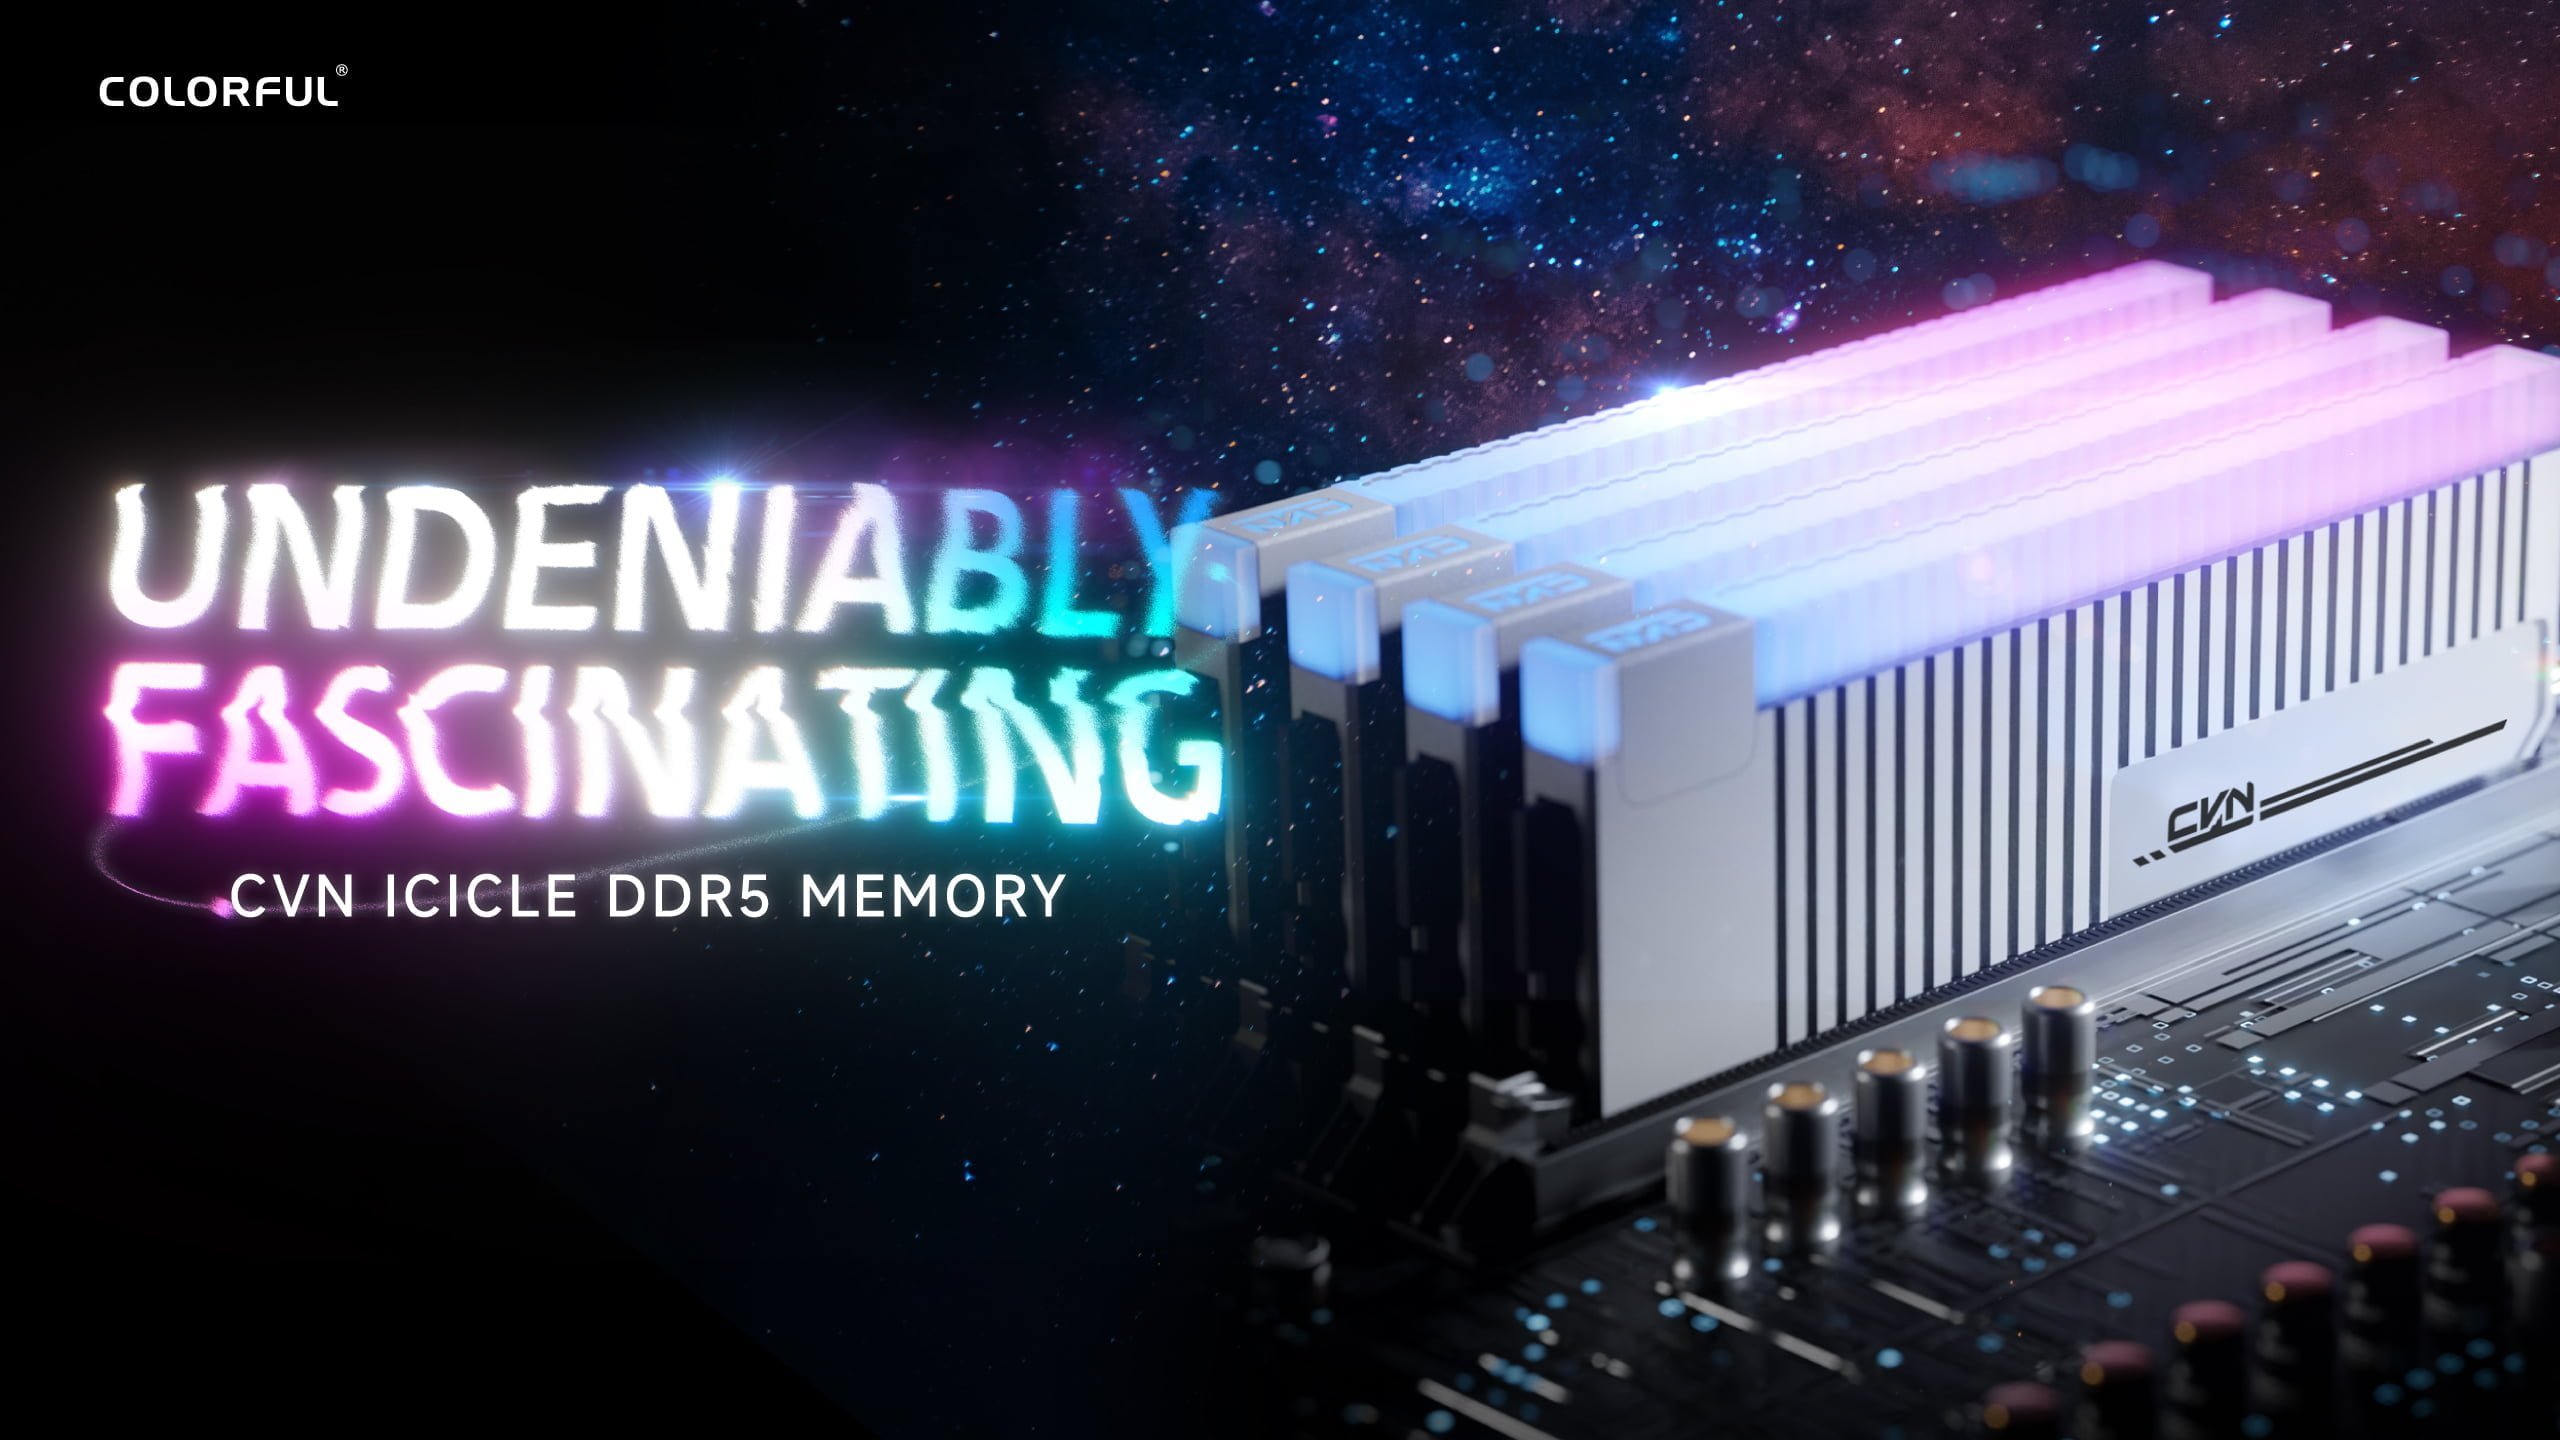 [PR] Colorful ra mắt bộ nhớ CVN ICICLE DDR5 dành cho người dùng ép xung - Image 6